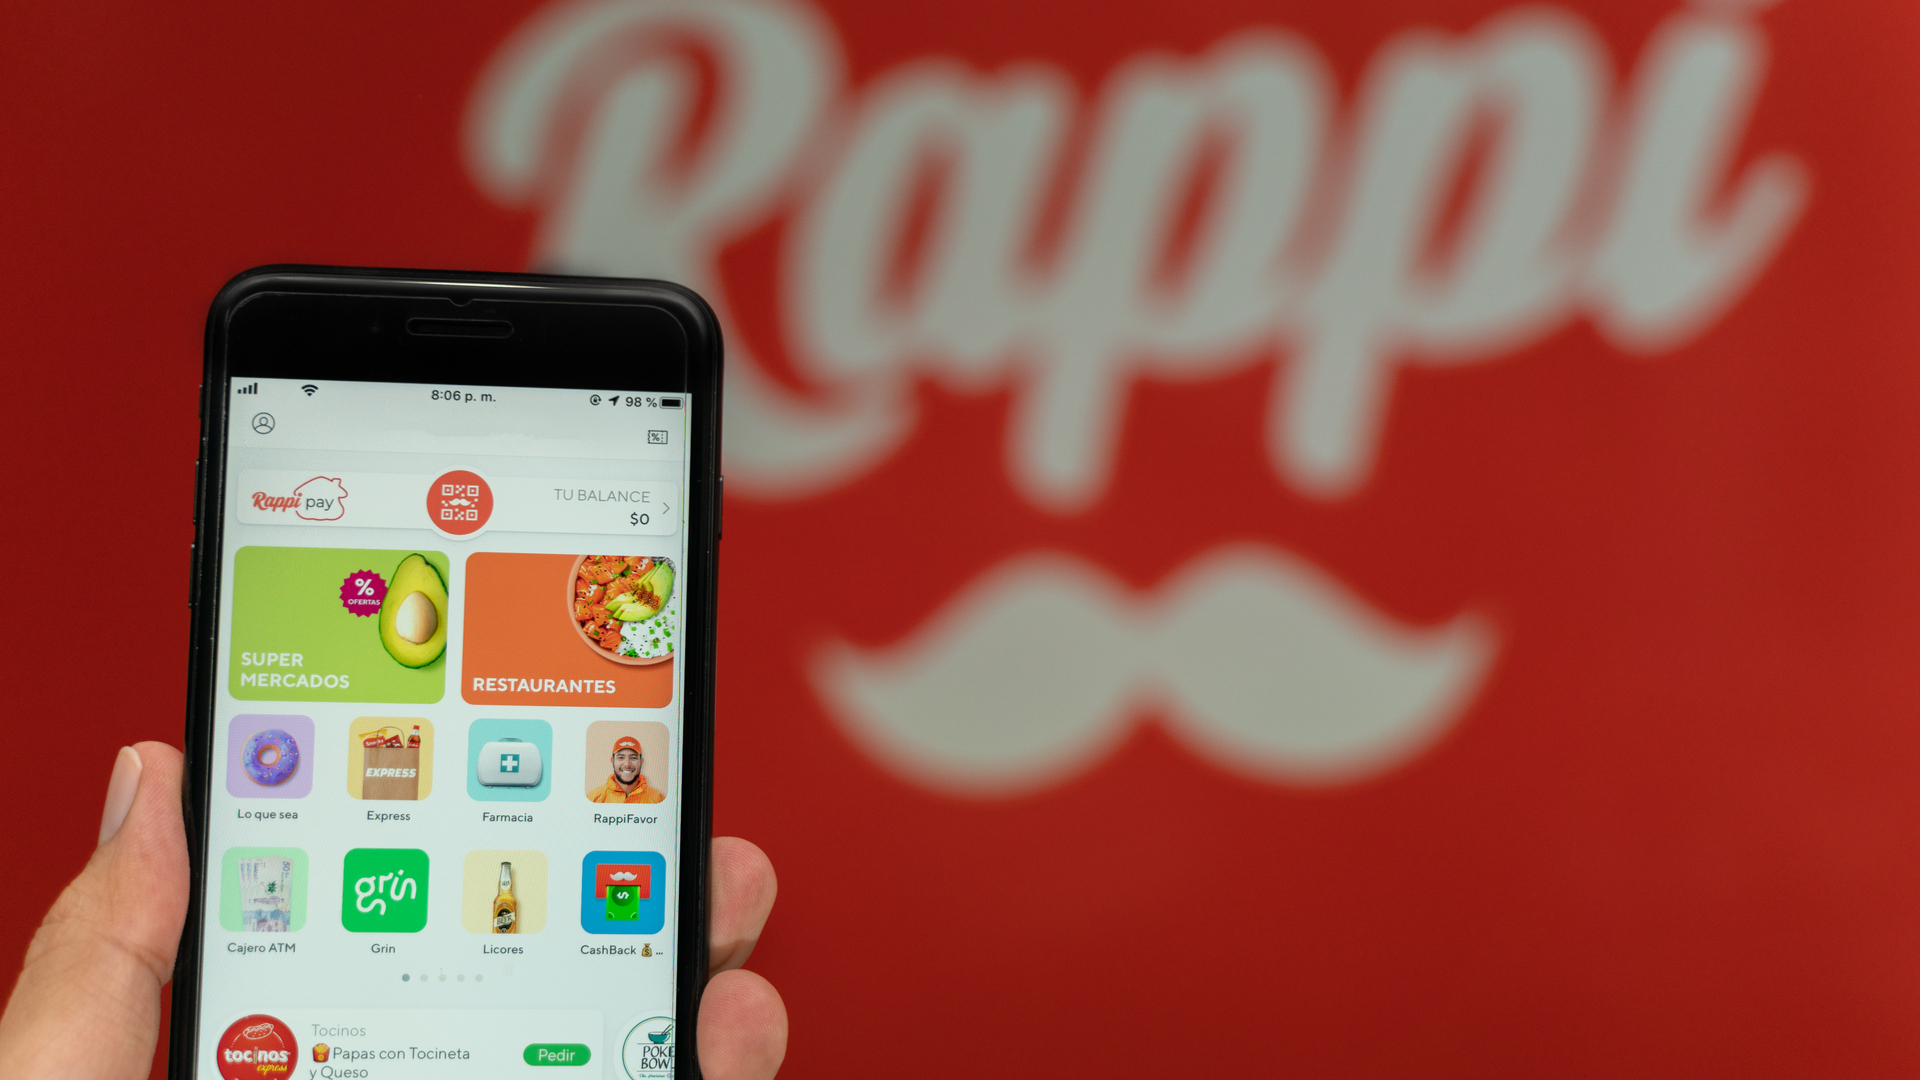 Imagem do aplicativo de entregas Rappi